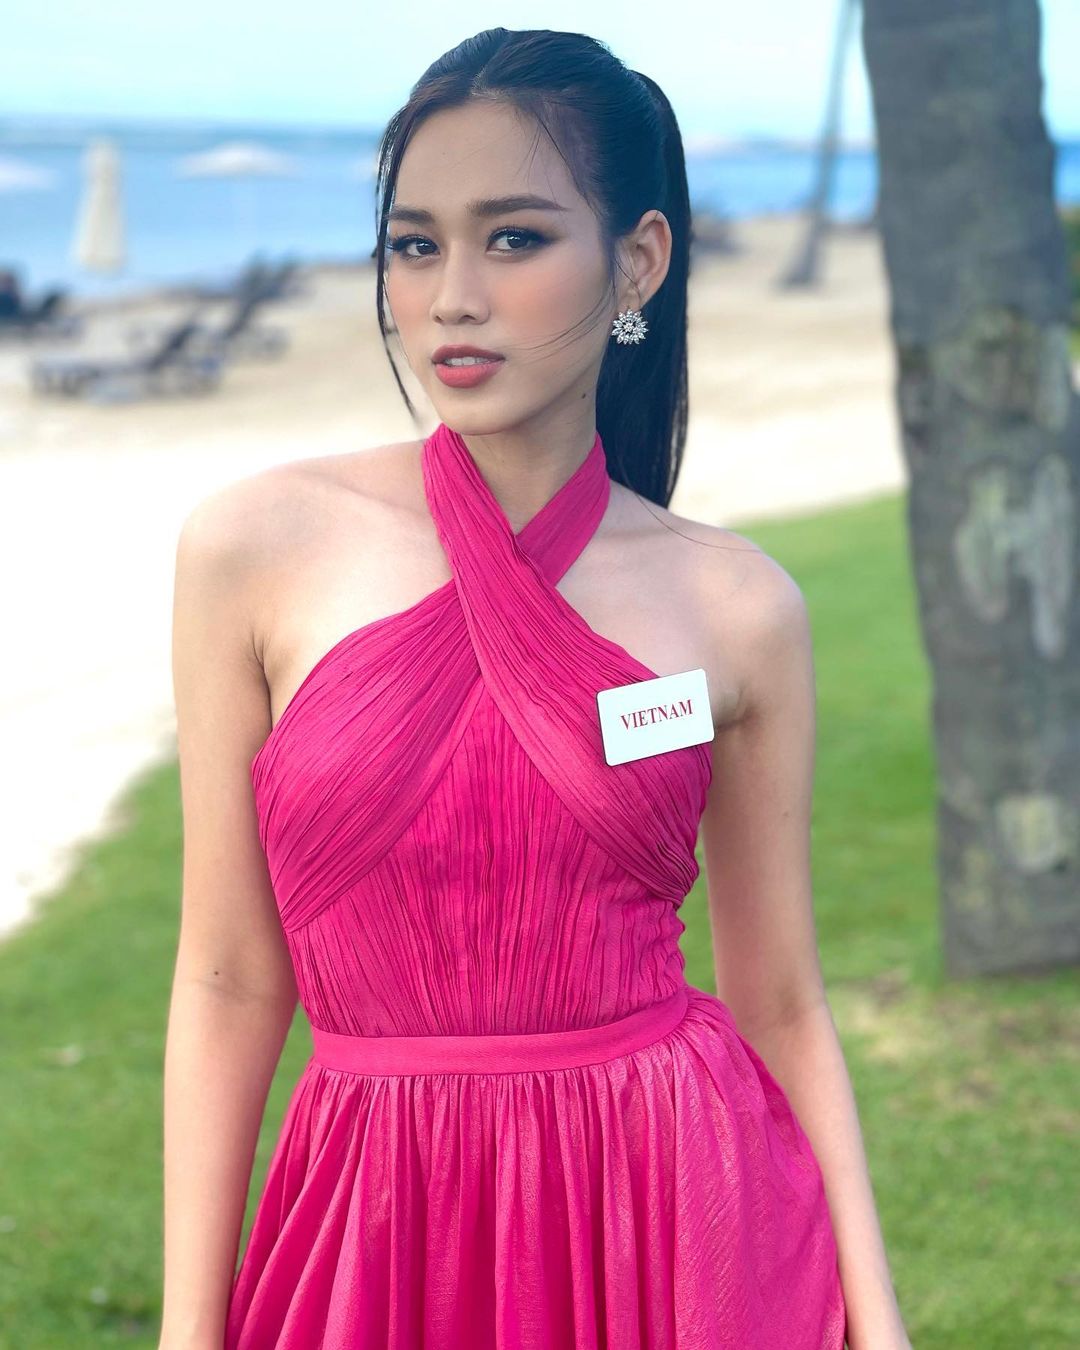 Đỗ Thị Hà đãi dàn thí sinh Miss World tiệc bánh tráng trộn Made in Vietnam - Ảnh 8